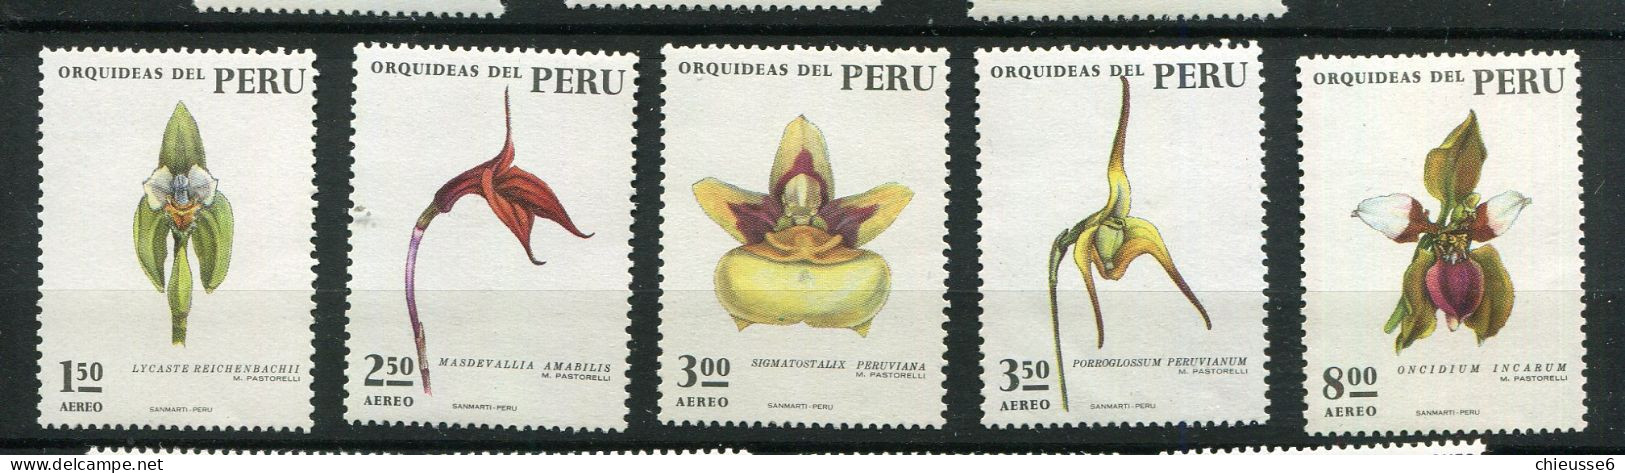 Perou ** - N° 356 à 360 - Orchidées - Perú